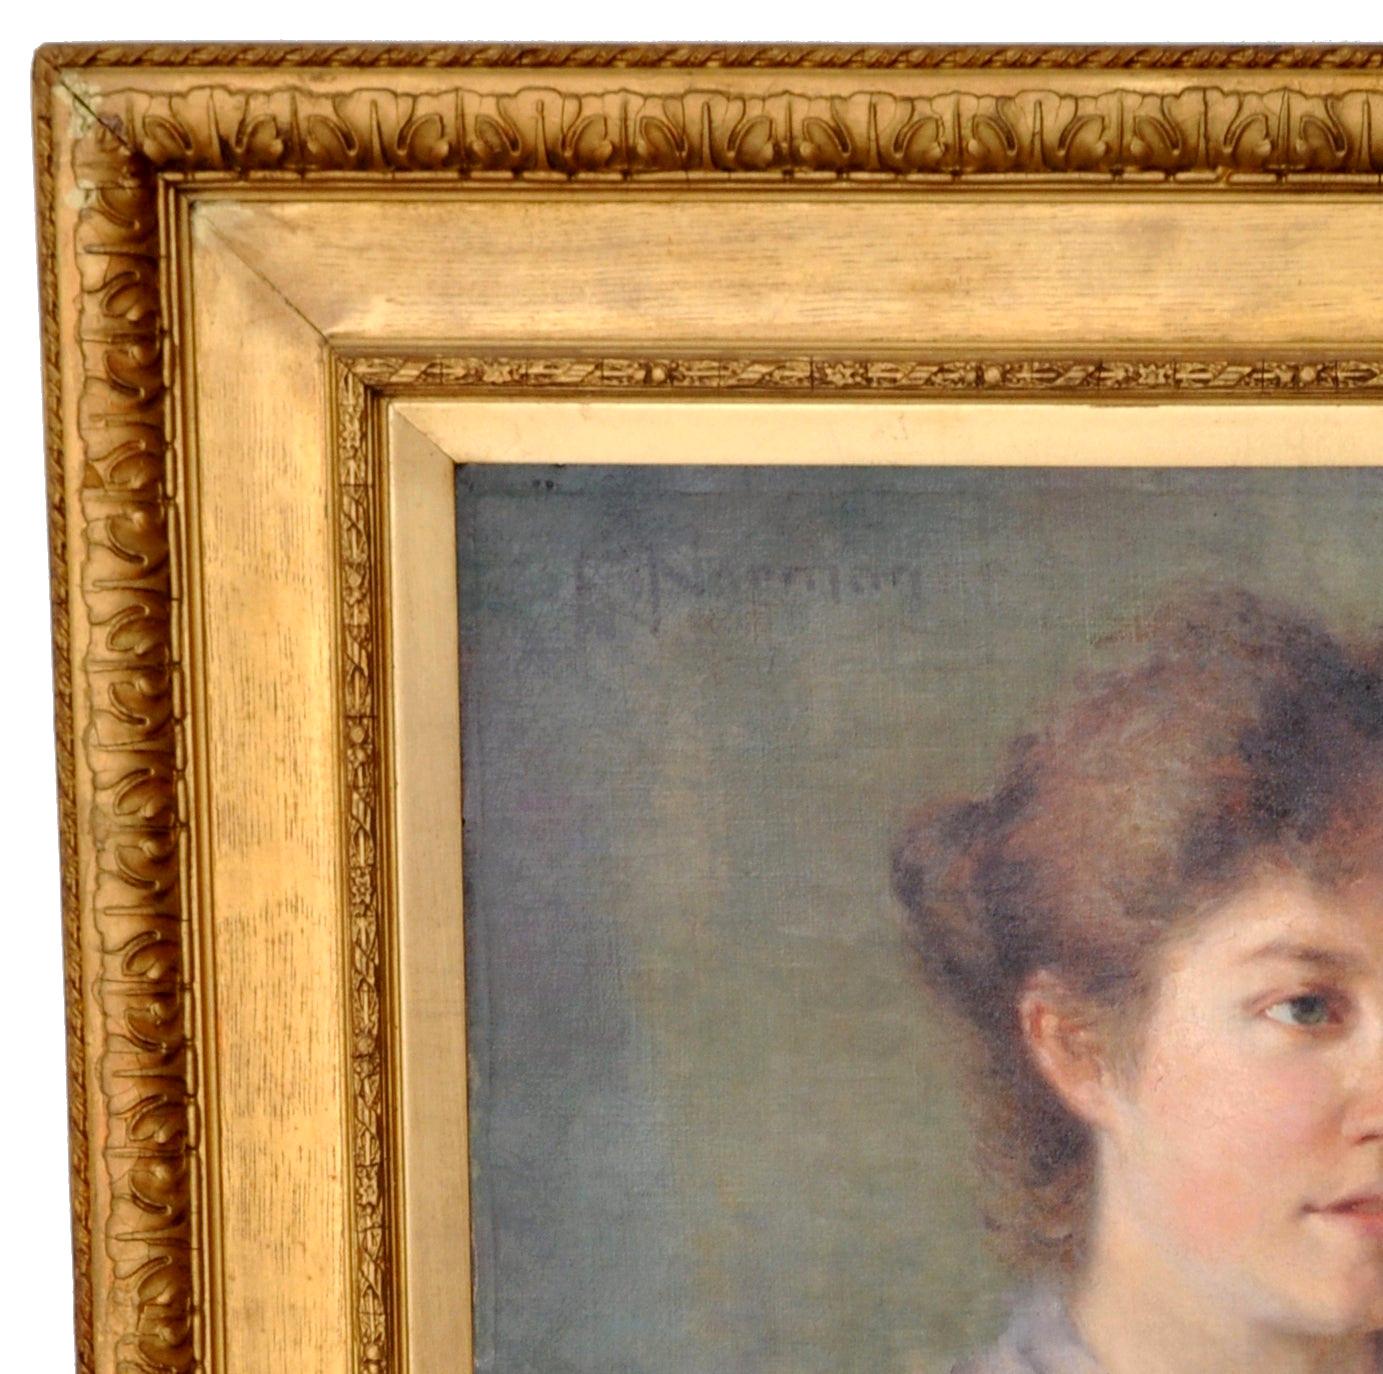 Antikes englisches Porträtgemälde in Öl auf Leinwand, um 1900. Ein sehr schönes impressionistisches Porträt einer jugendlichen Dame in edwardianischer Kleidung. Öl auf Leinwand, links oben signiert 